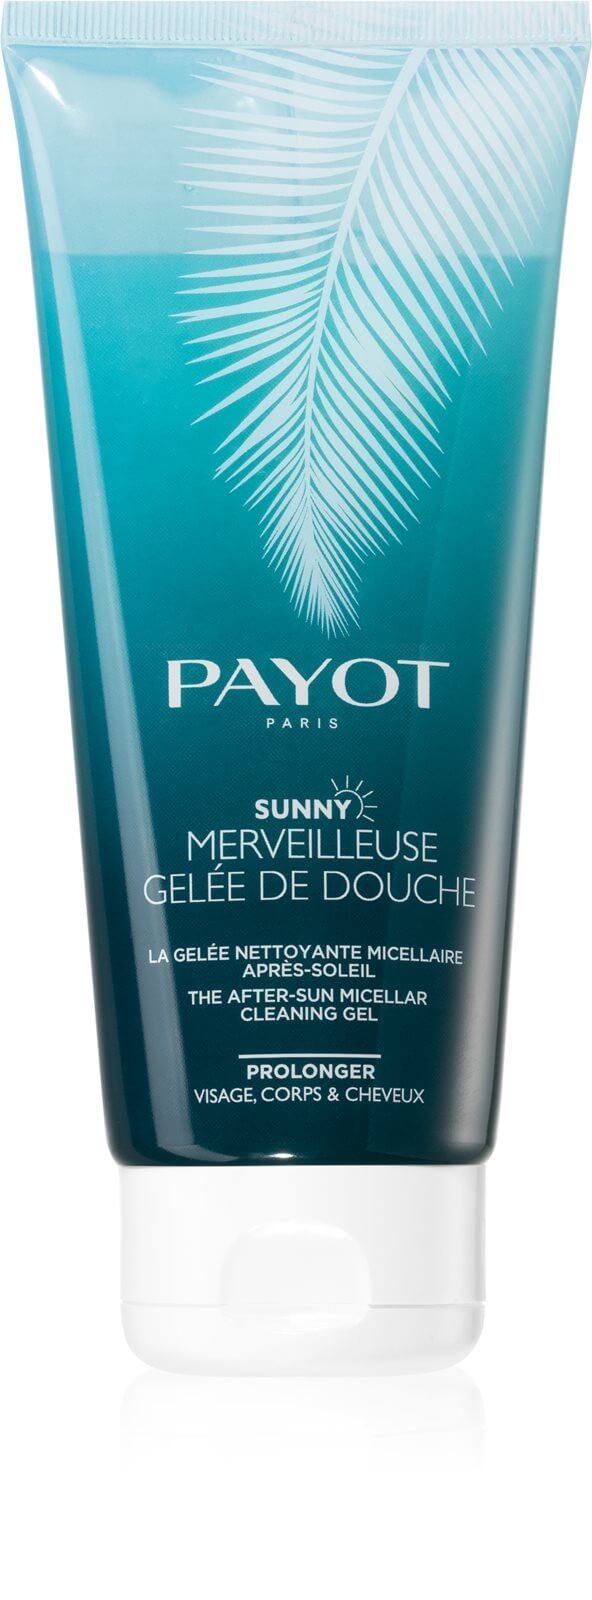 Payot Micelární sprchový gel po opalování Merveilleuse Gelée De Douche (The After-Sun Micellar Cleaning Gel) 200 ml